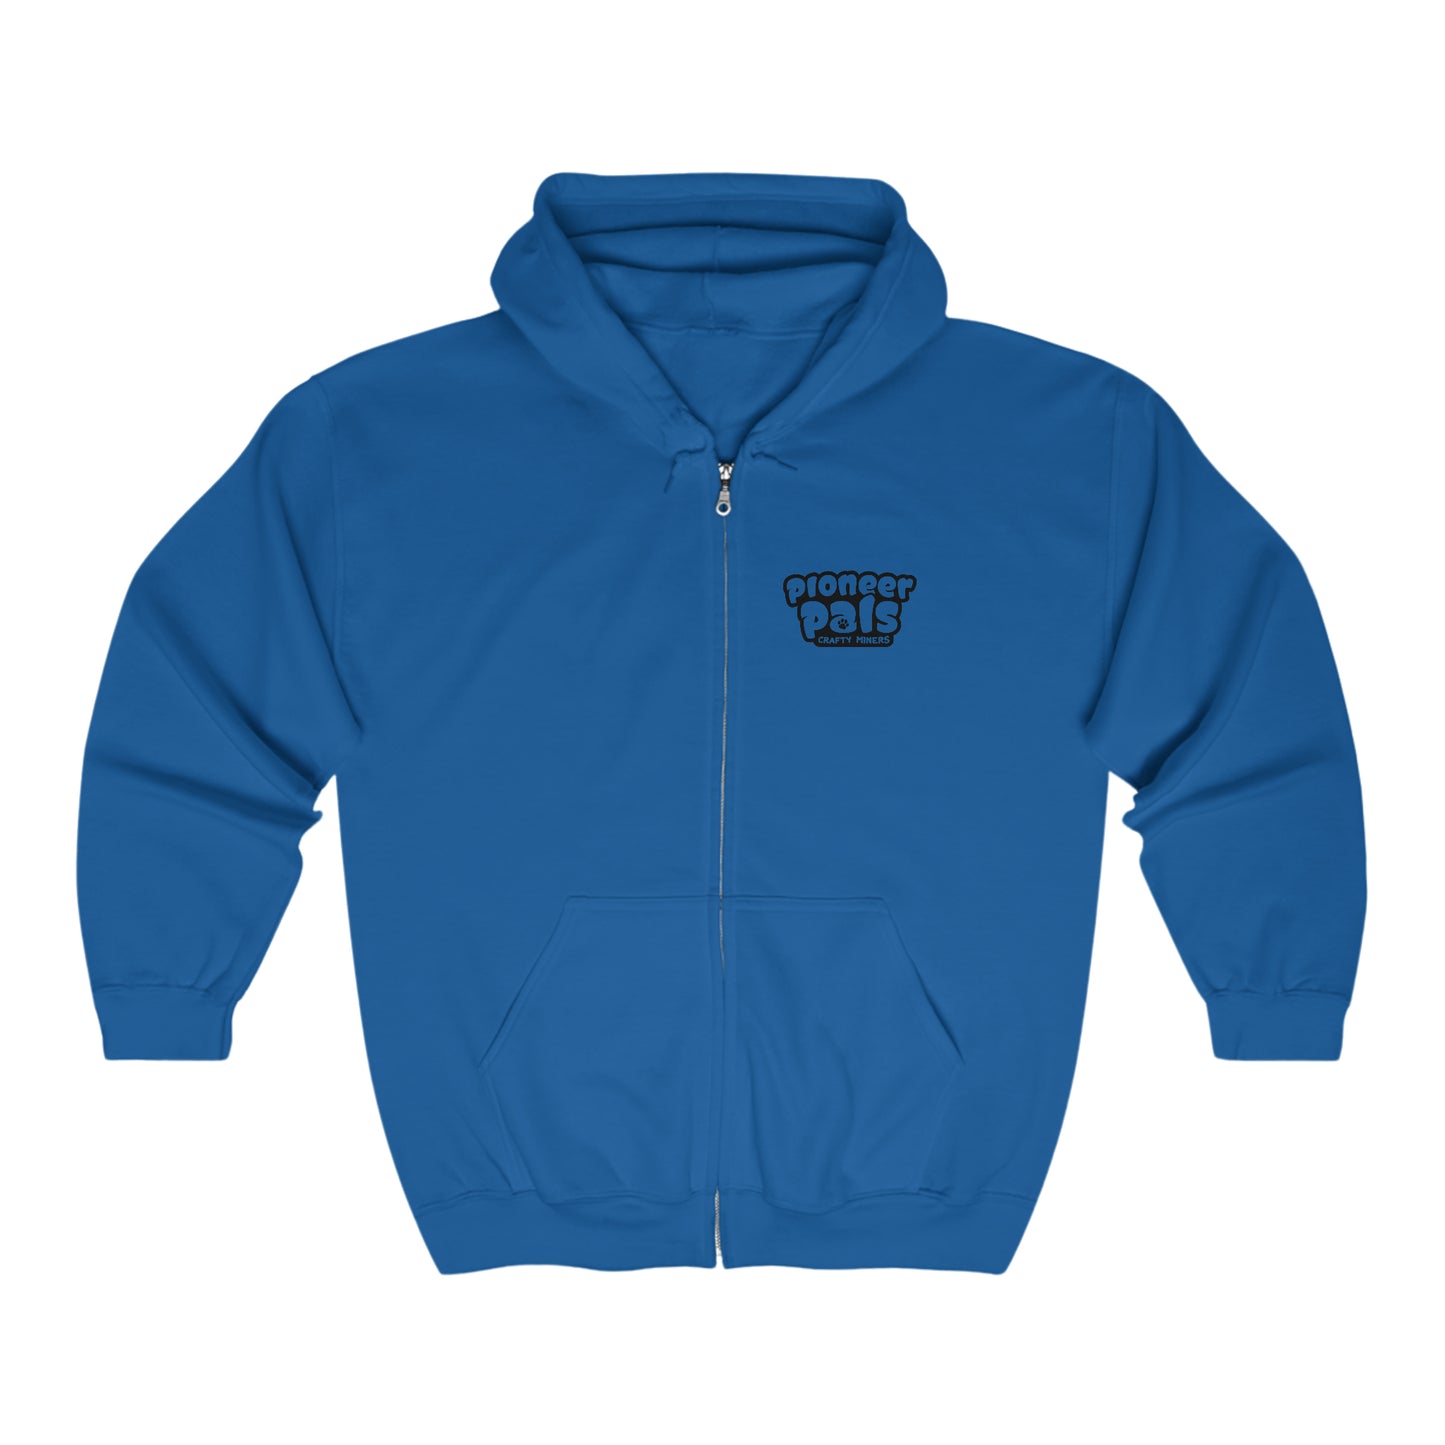 Pioneer Pals RAID! Unisex Heavy Blend™ Full Zip Hooded Sweatshirt